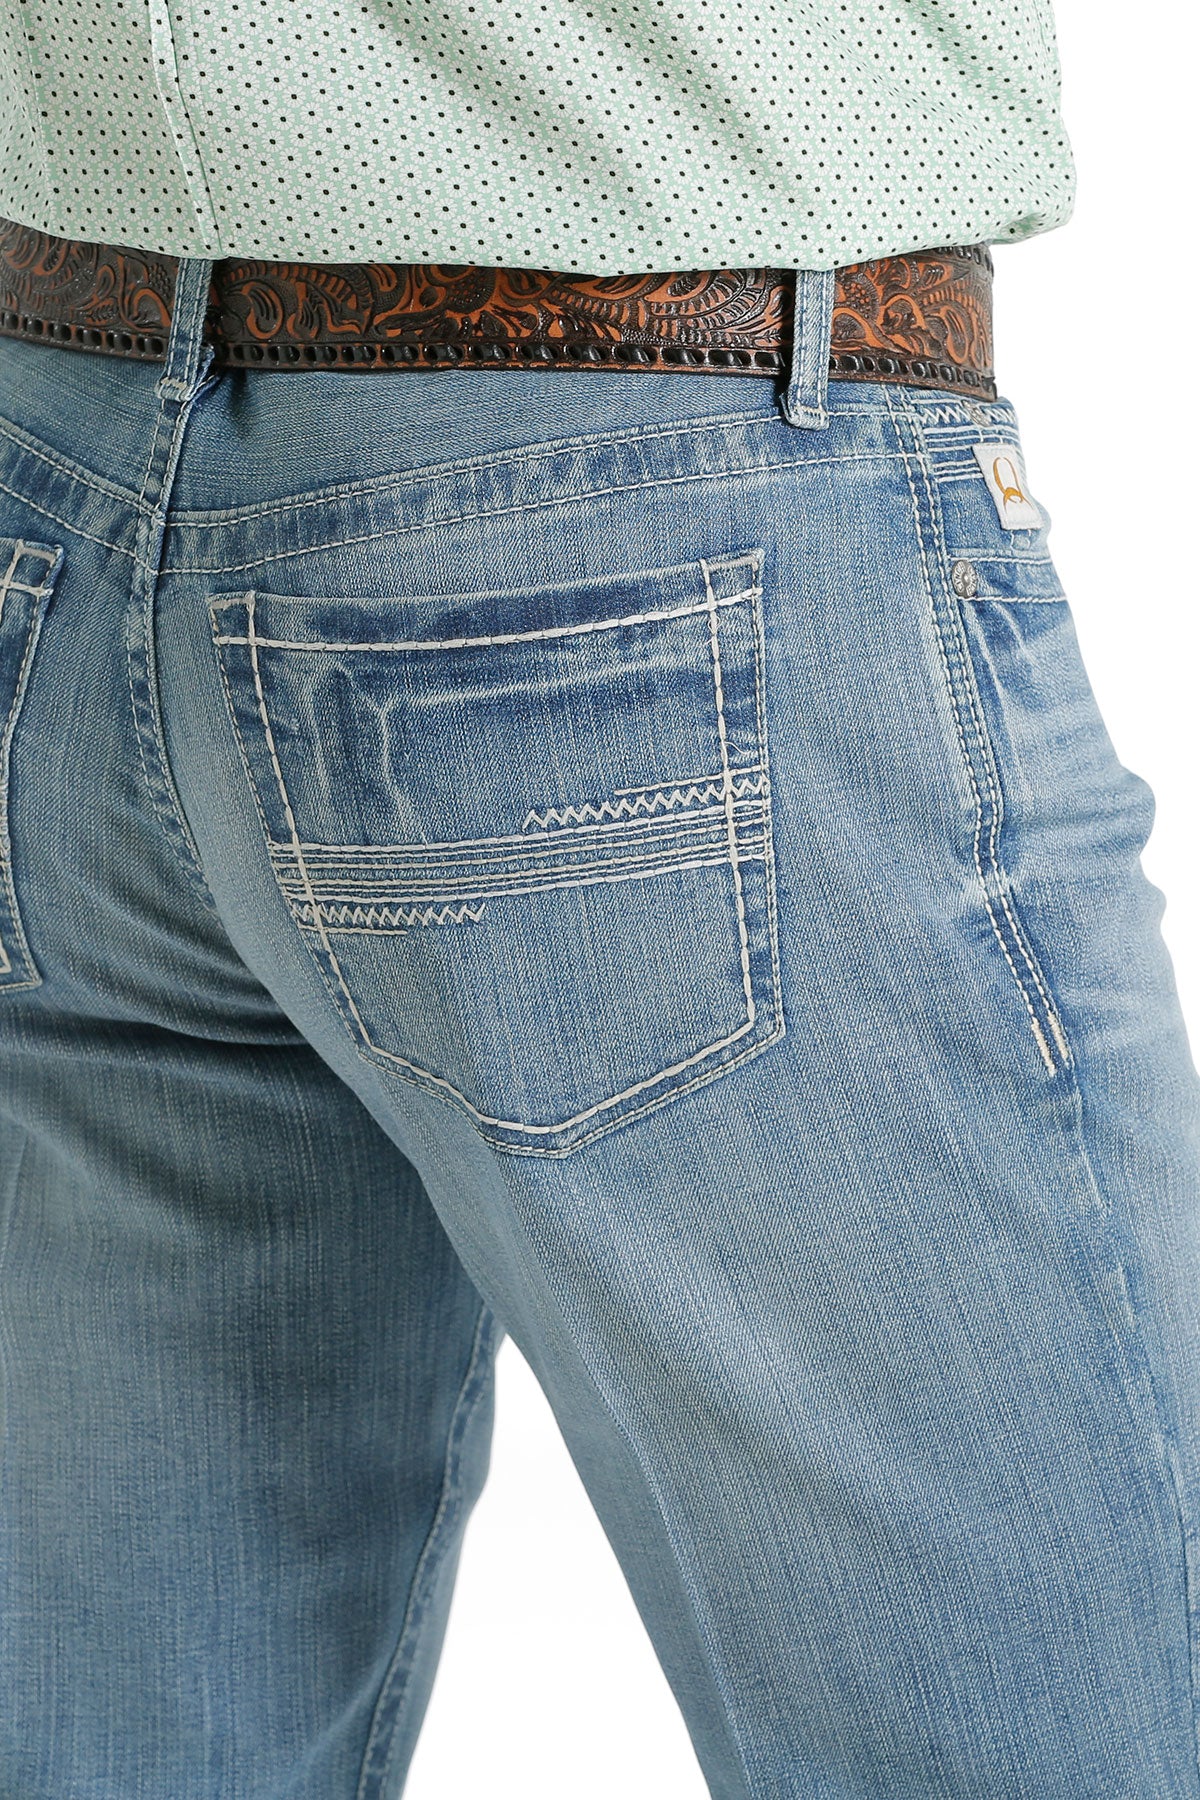 Cinch Men's Ian Slim Fit Jean in Light Stone – Branded Country Wear